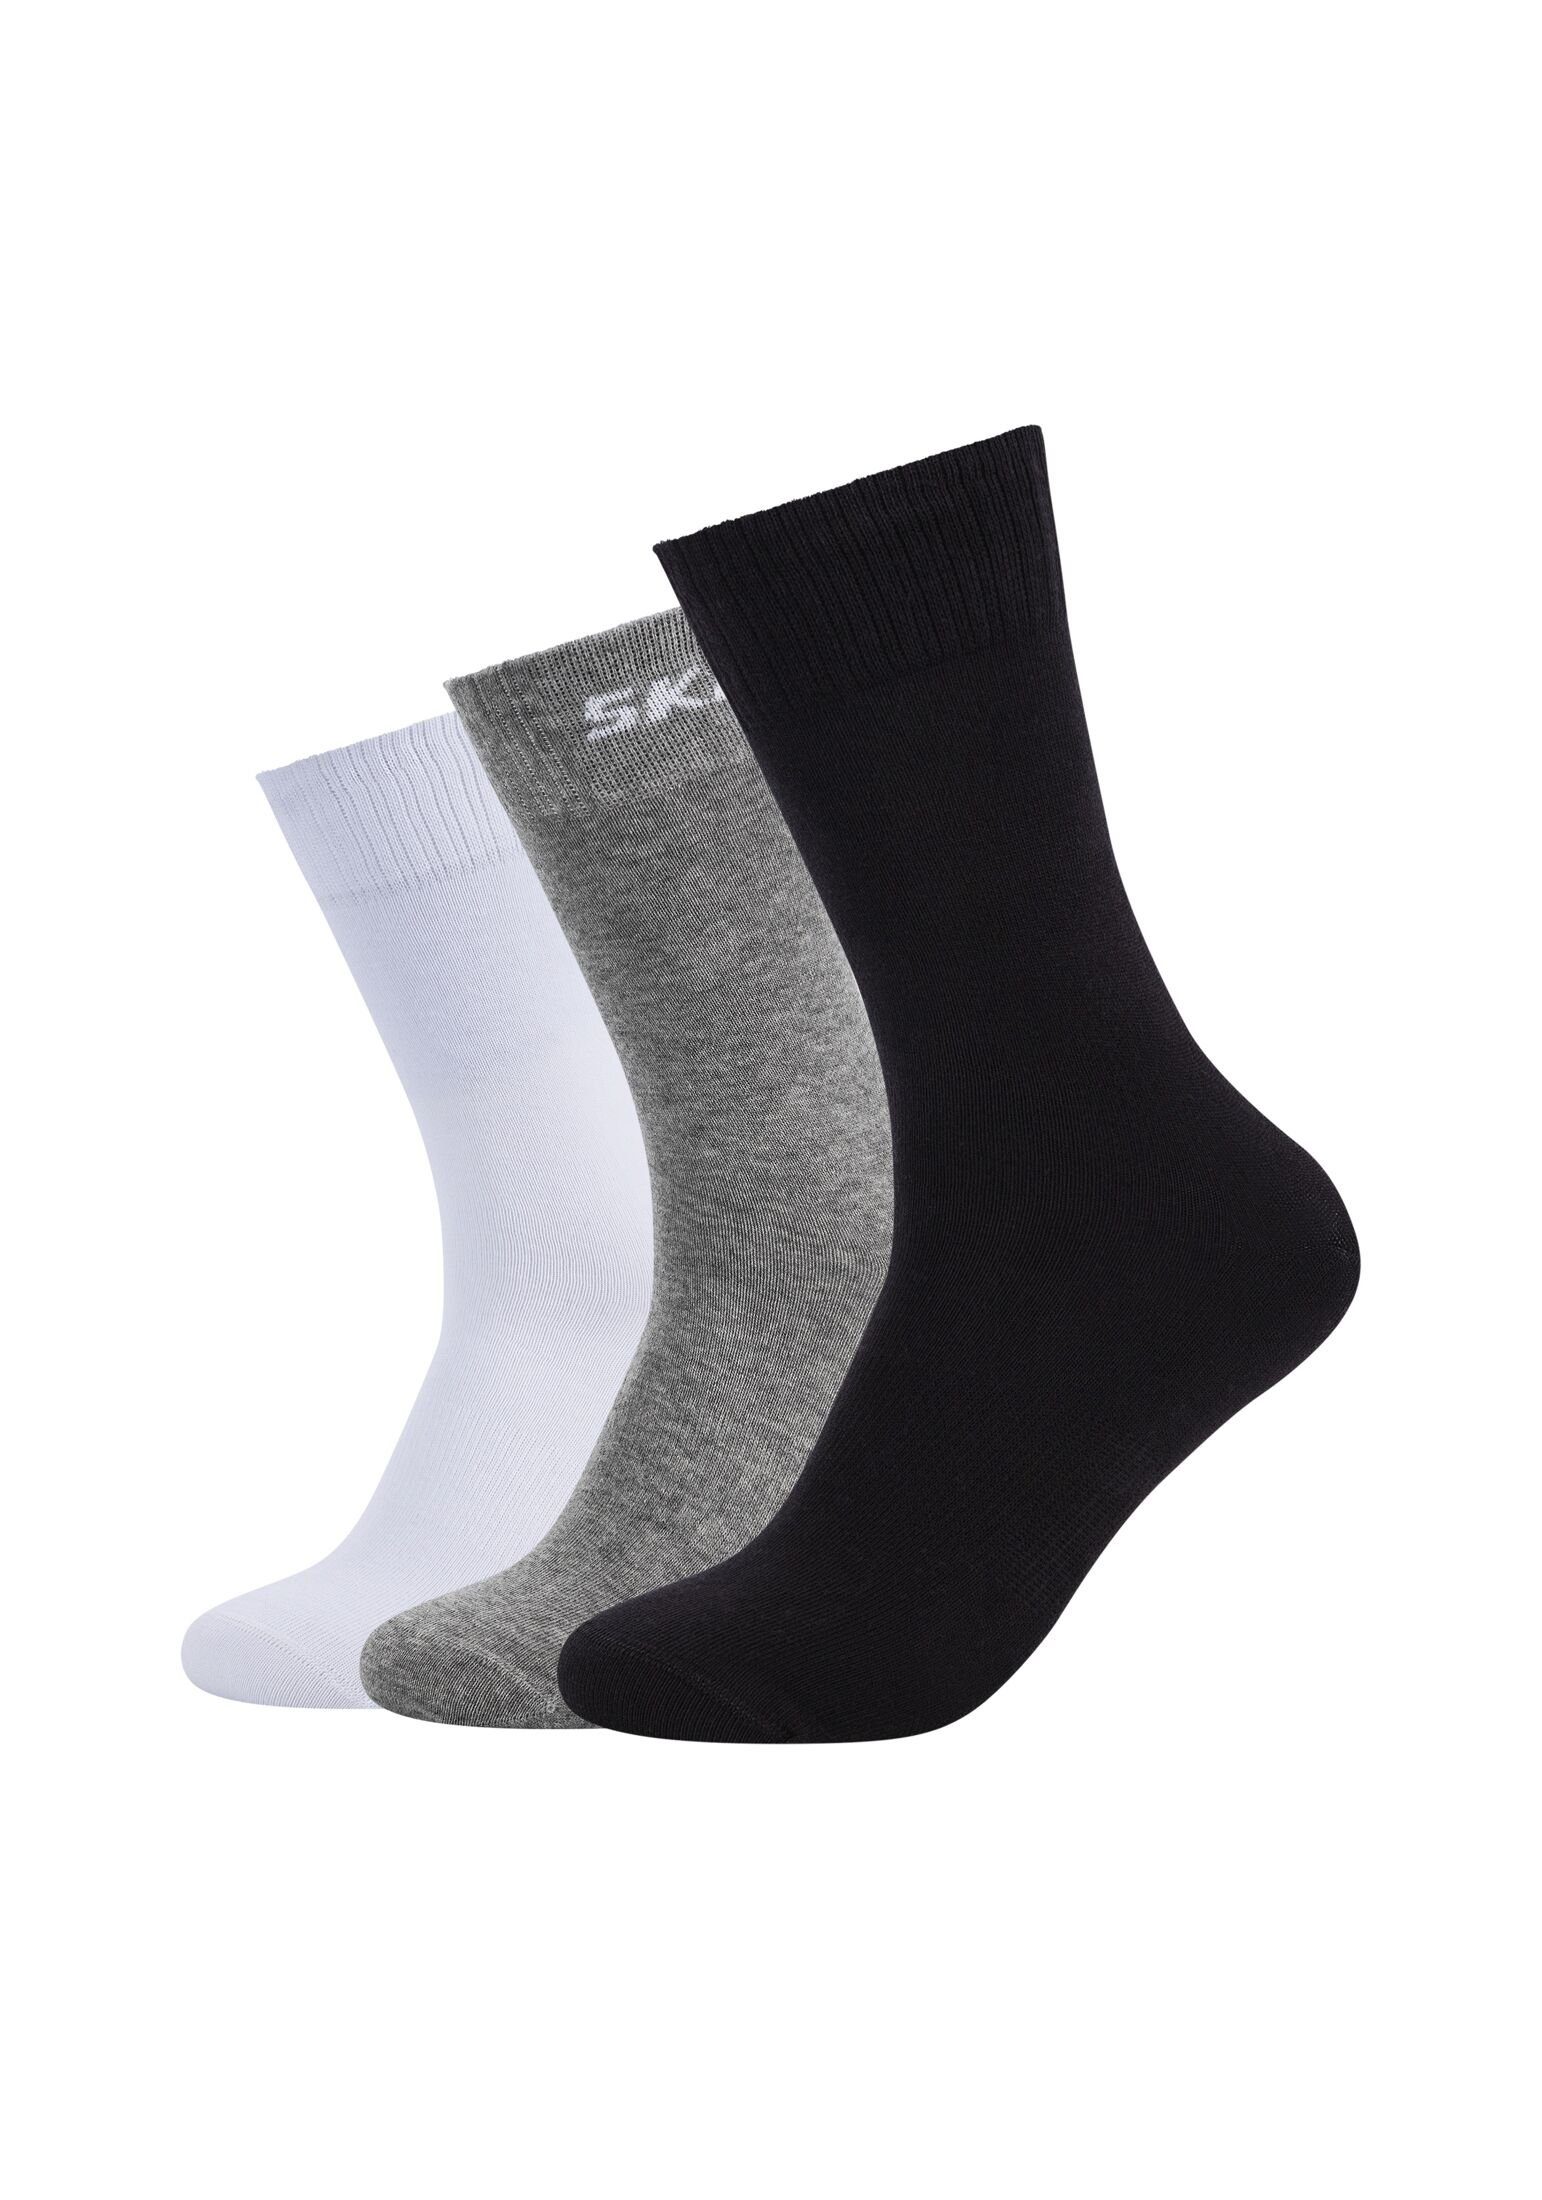 Skechers Socken Socken 6er Pack mix black/grey